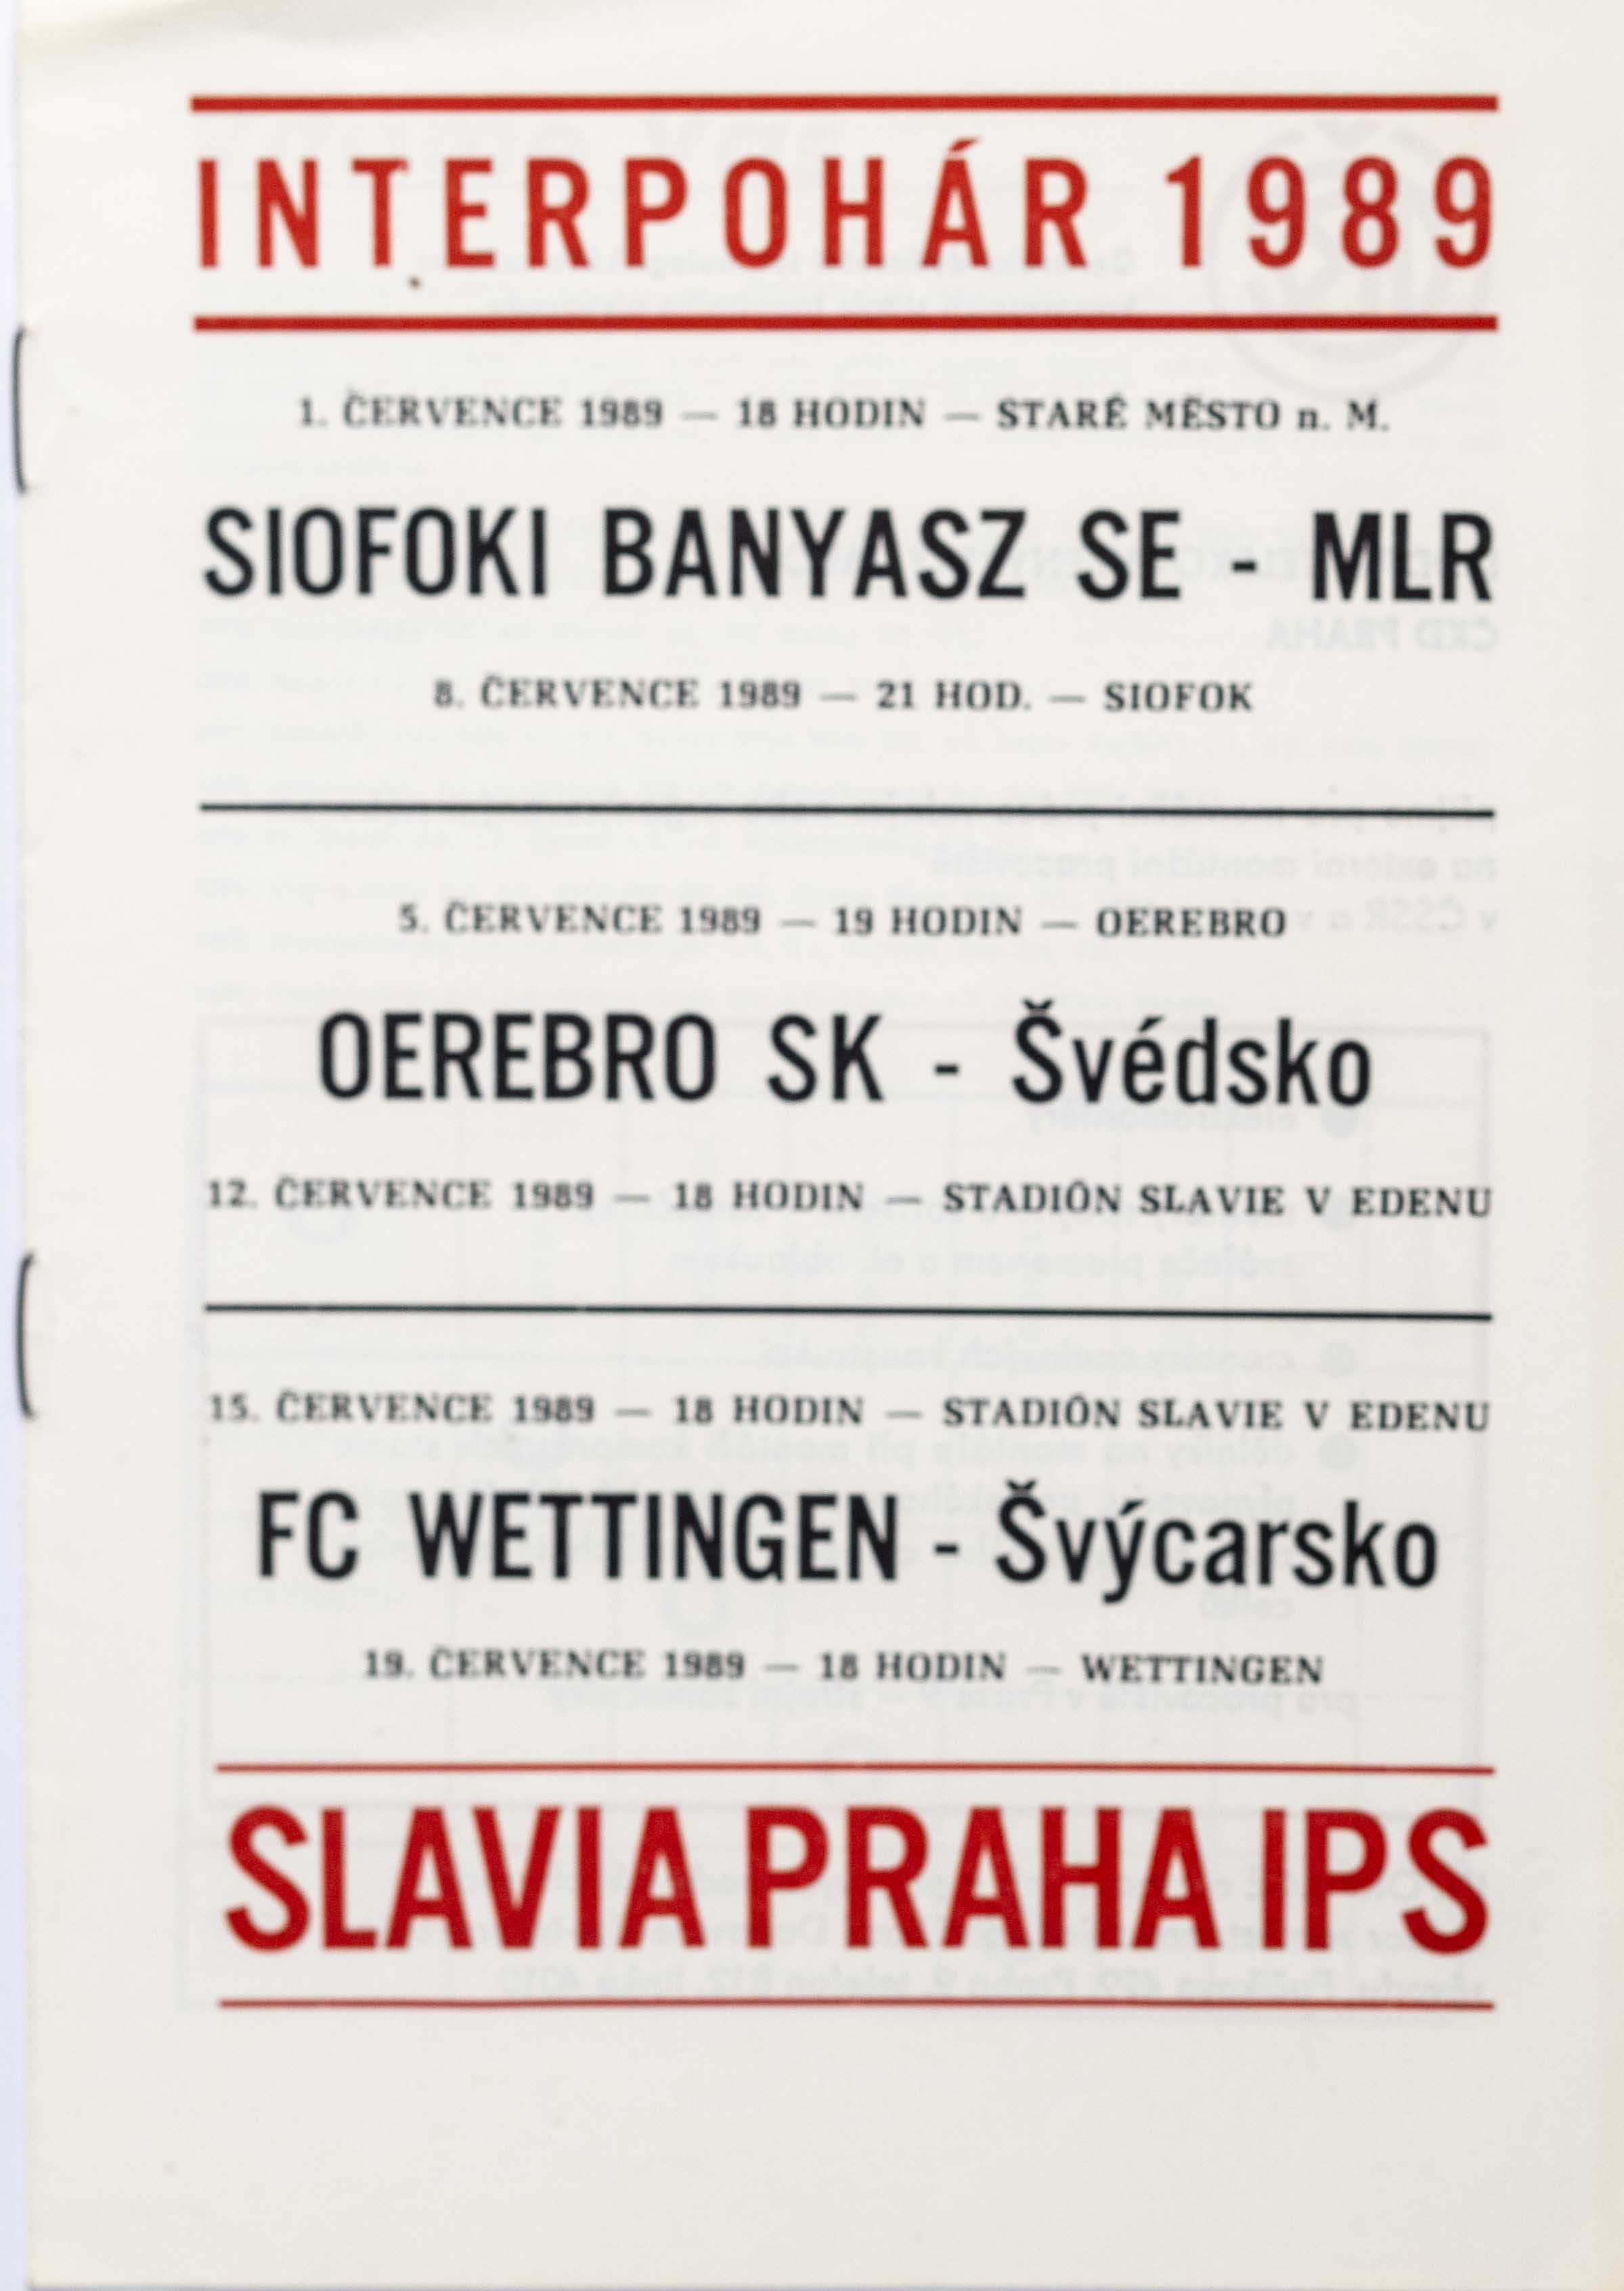 Poločas TJ Slavia Praha IPS Interpohár 1989